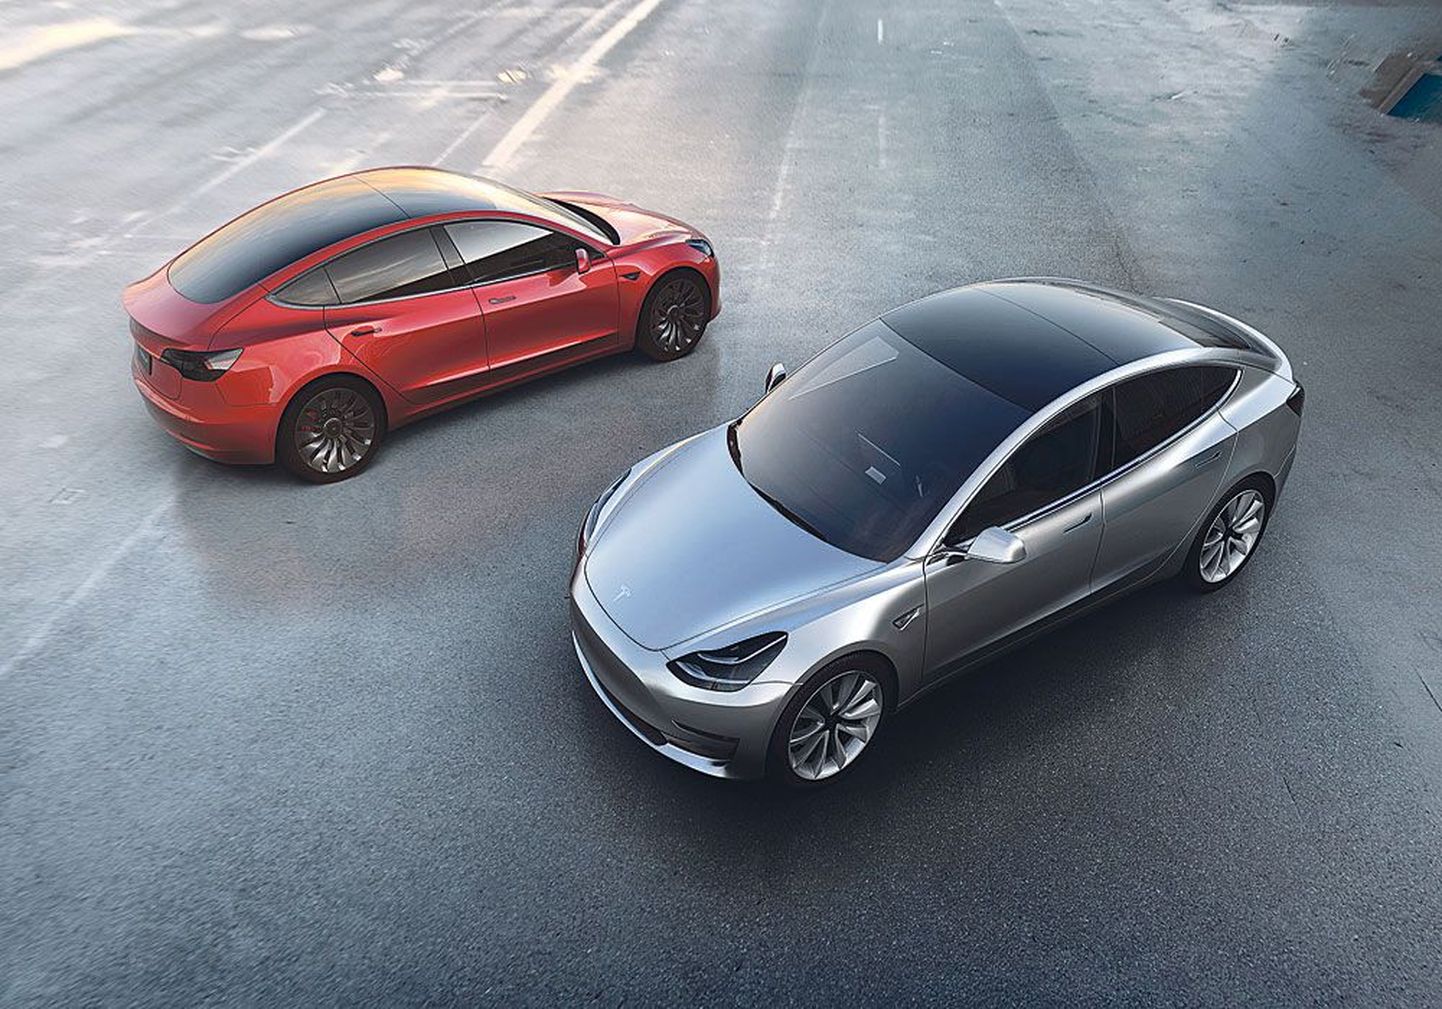 Модель Tesla Model 3 чем-то напоминает BMW 3-й серии. Судя по повышенному интересу к новой модели, скоро Tesla может стать самым успешным производителем электромобилей в мире.